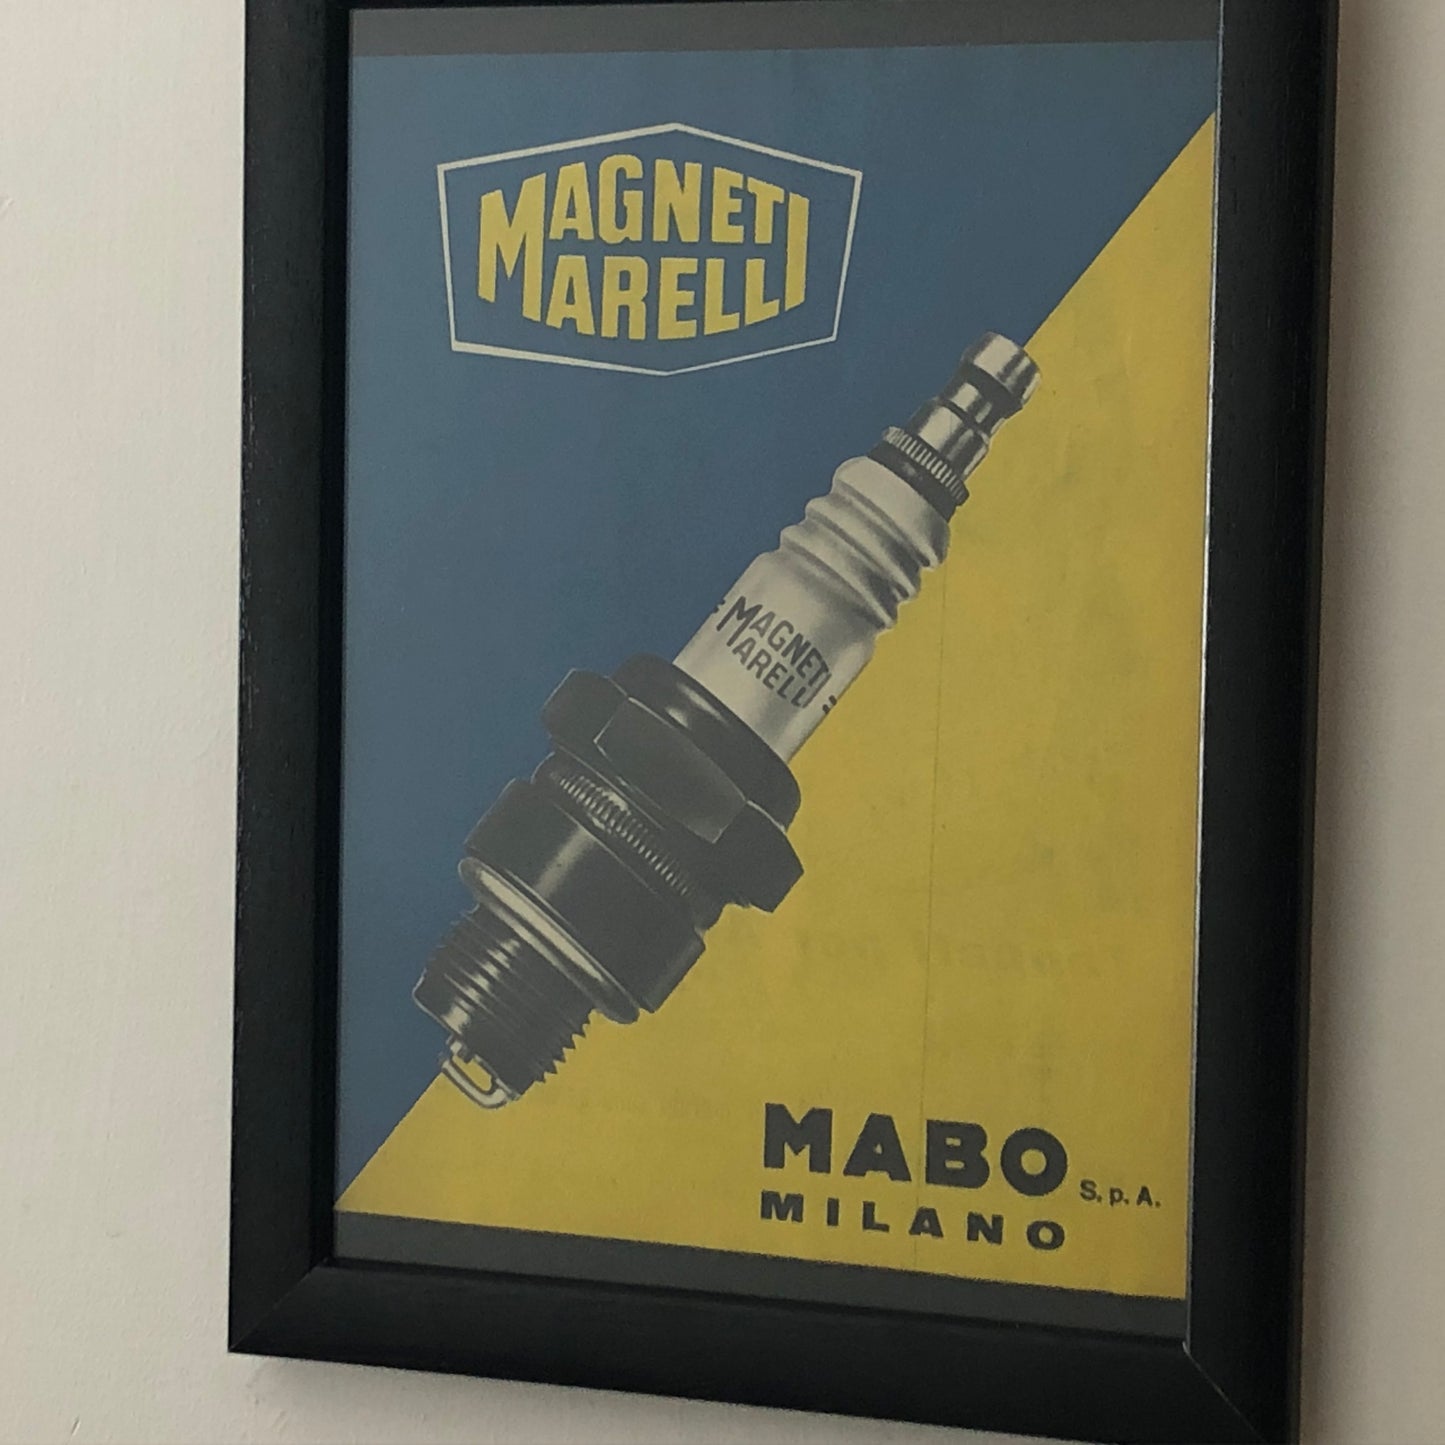 Magneti Marelli, Pubblicità Anno 1960 Candele Magneti Marelli